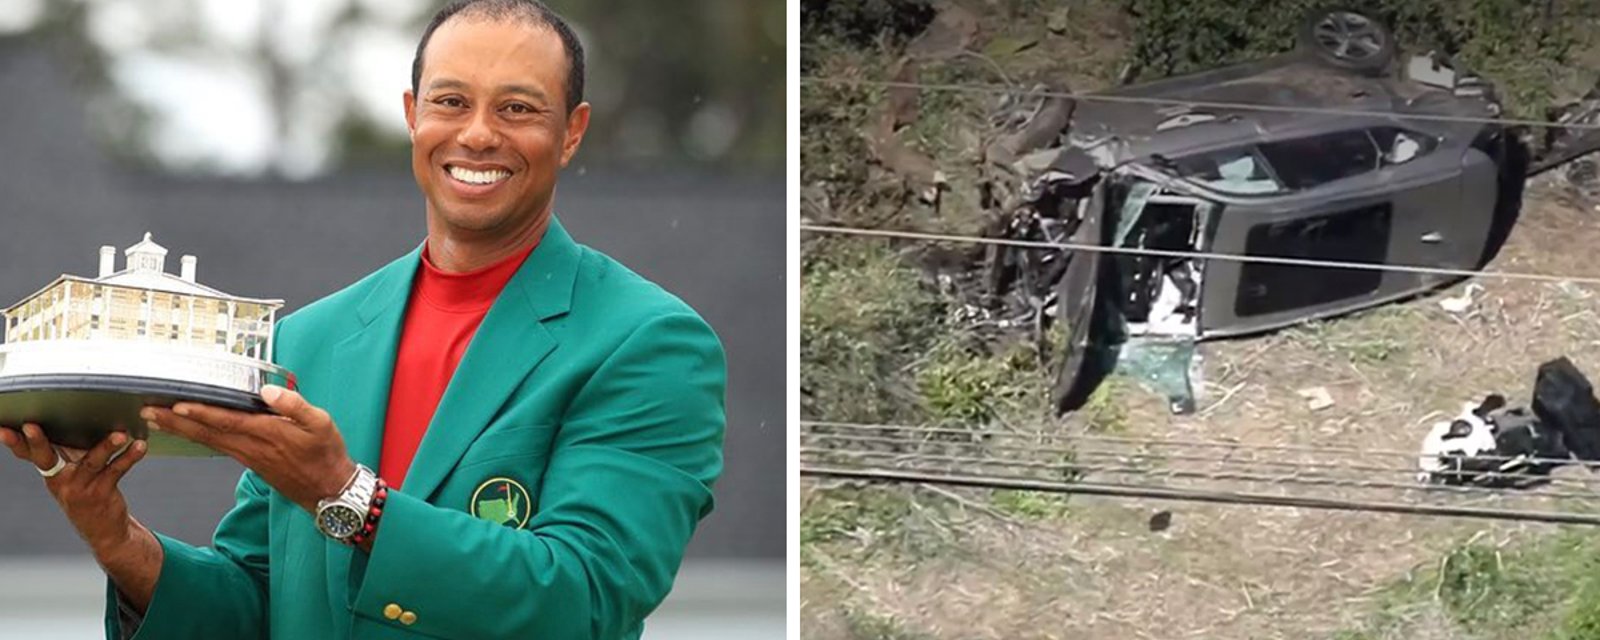 De nouveaux détails sur l'état de santé de Tiger Woods font surface, après son accident 